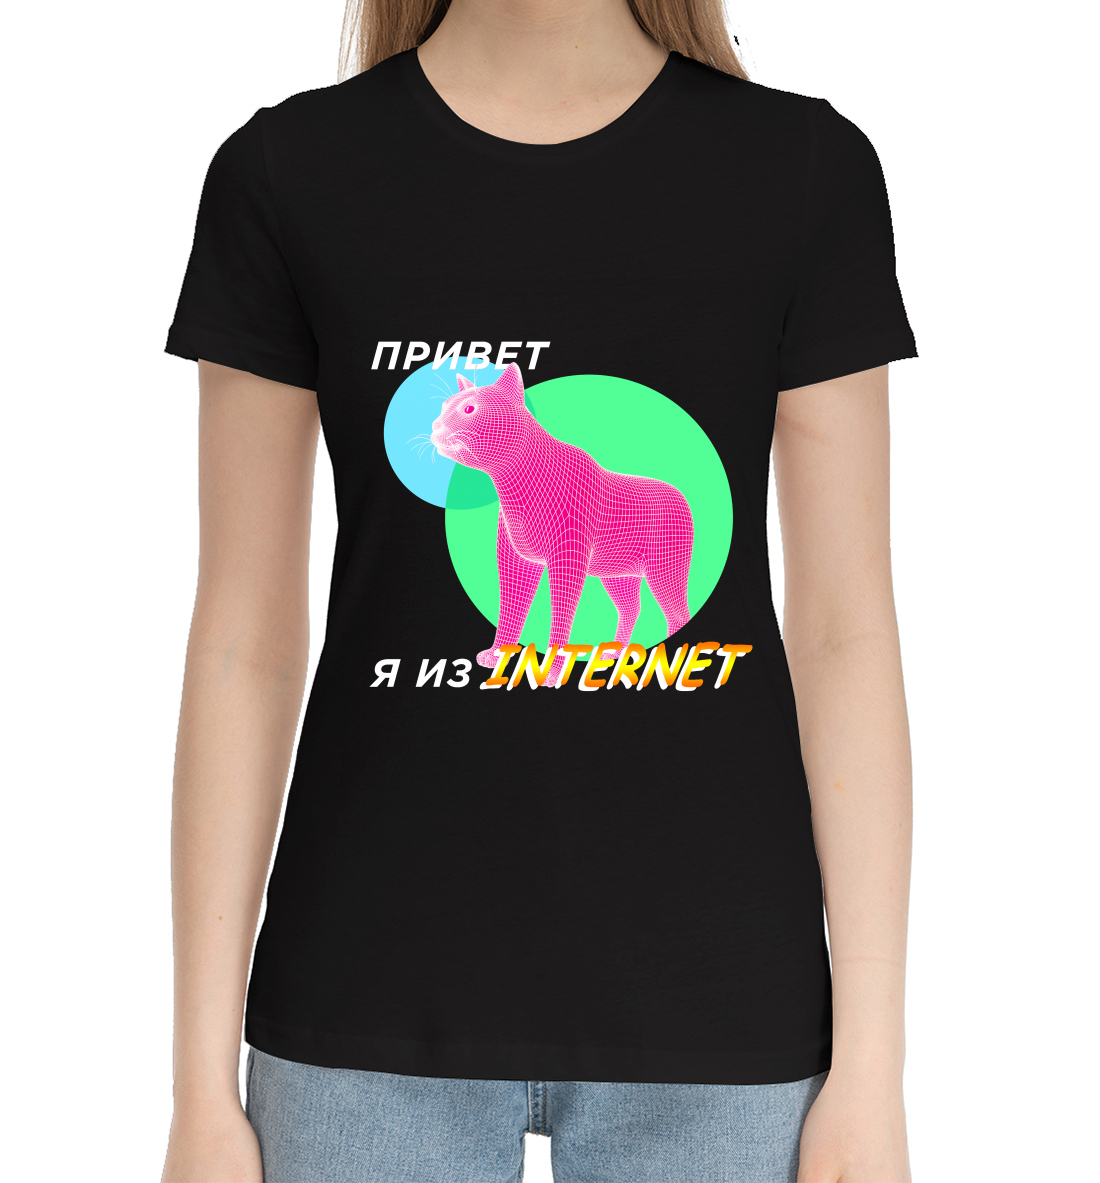 Женская Хлопковая футболка с надписью Привет я из internet black, артикул MEM-732479-hfu-1mp